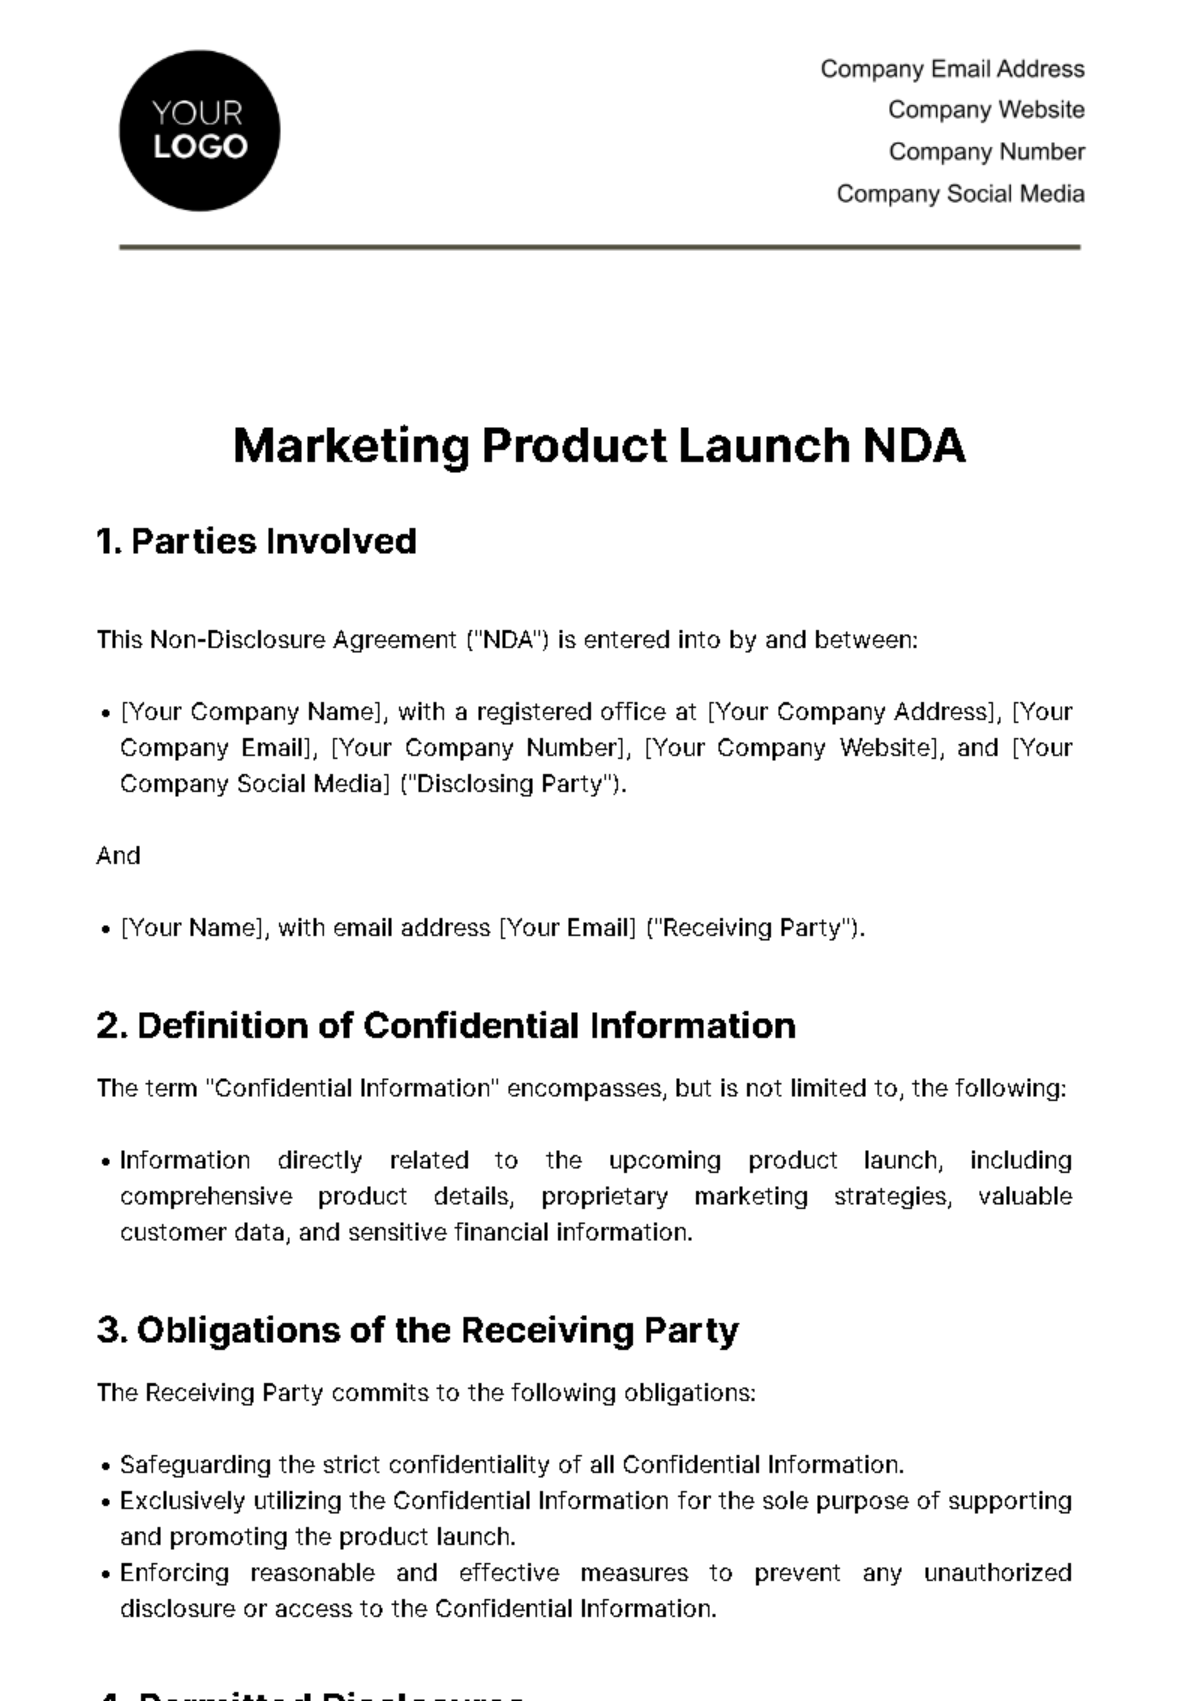 Free Marketing Product Launch NDA Template